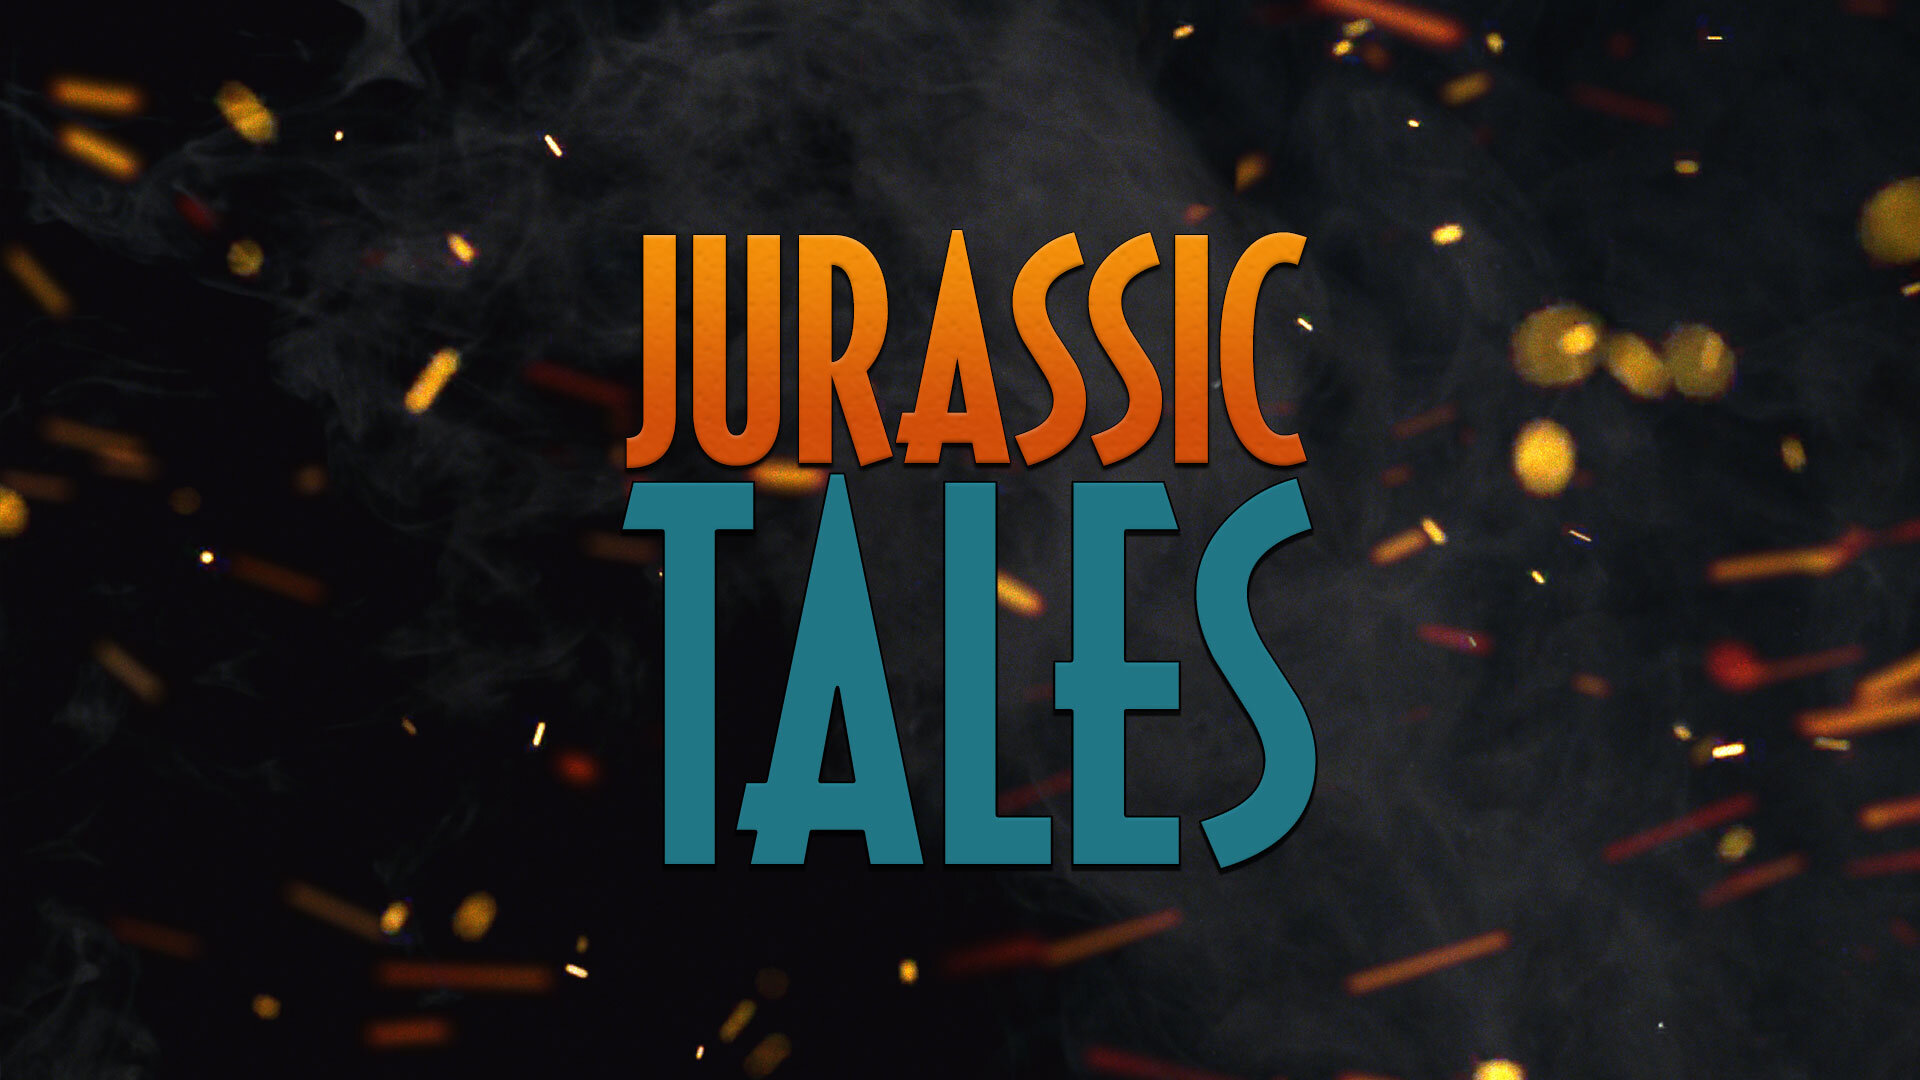 Jurassic-Tales.jpg